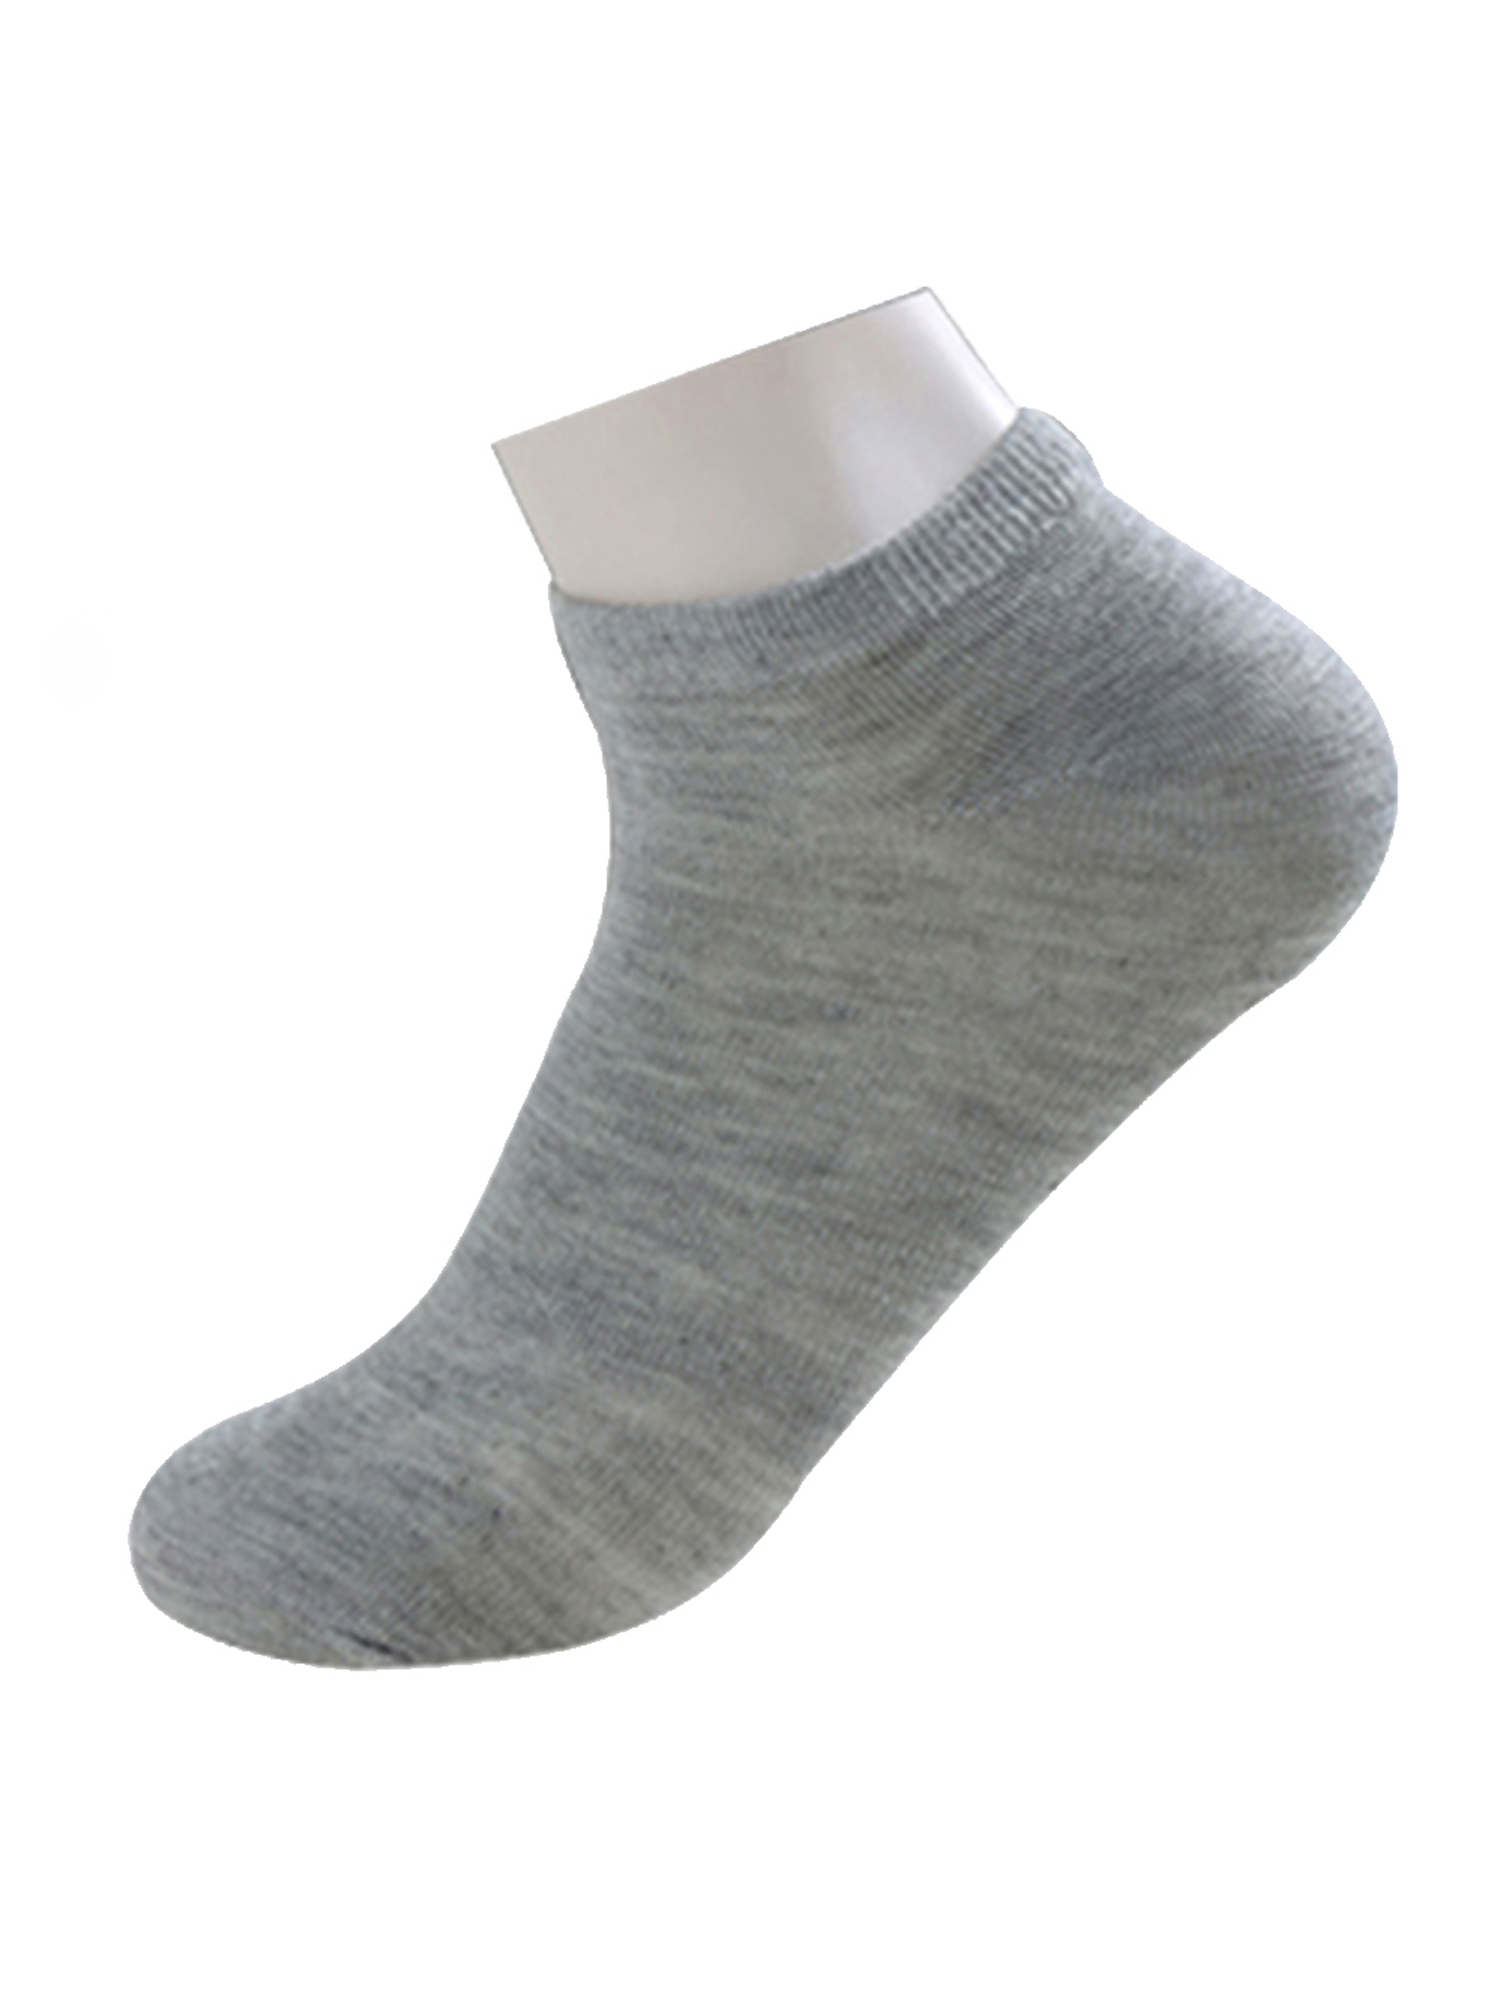 Unique Bargains Soft Cotton Athletic Ankle Socks 5-Pack (Junior & Women's) - image 7 of 7